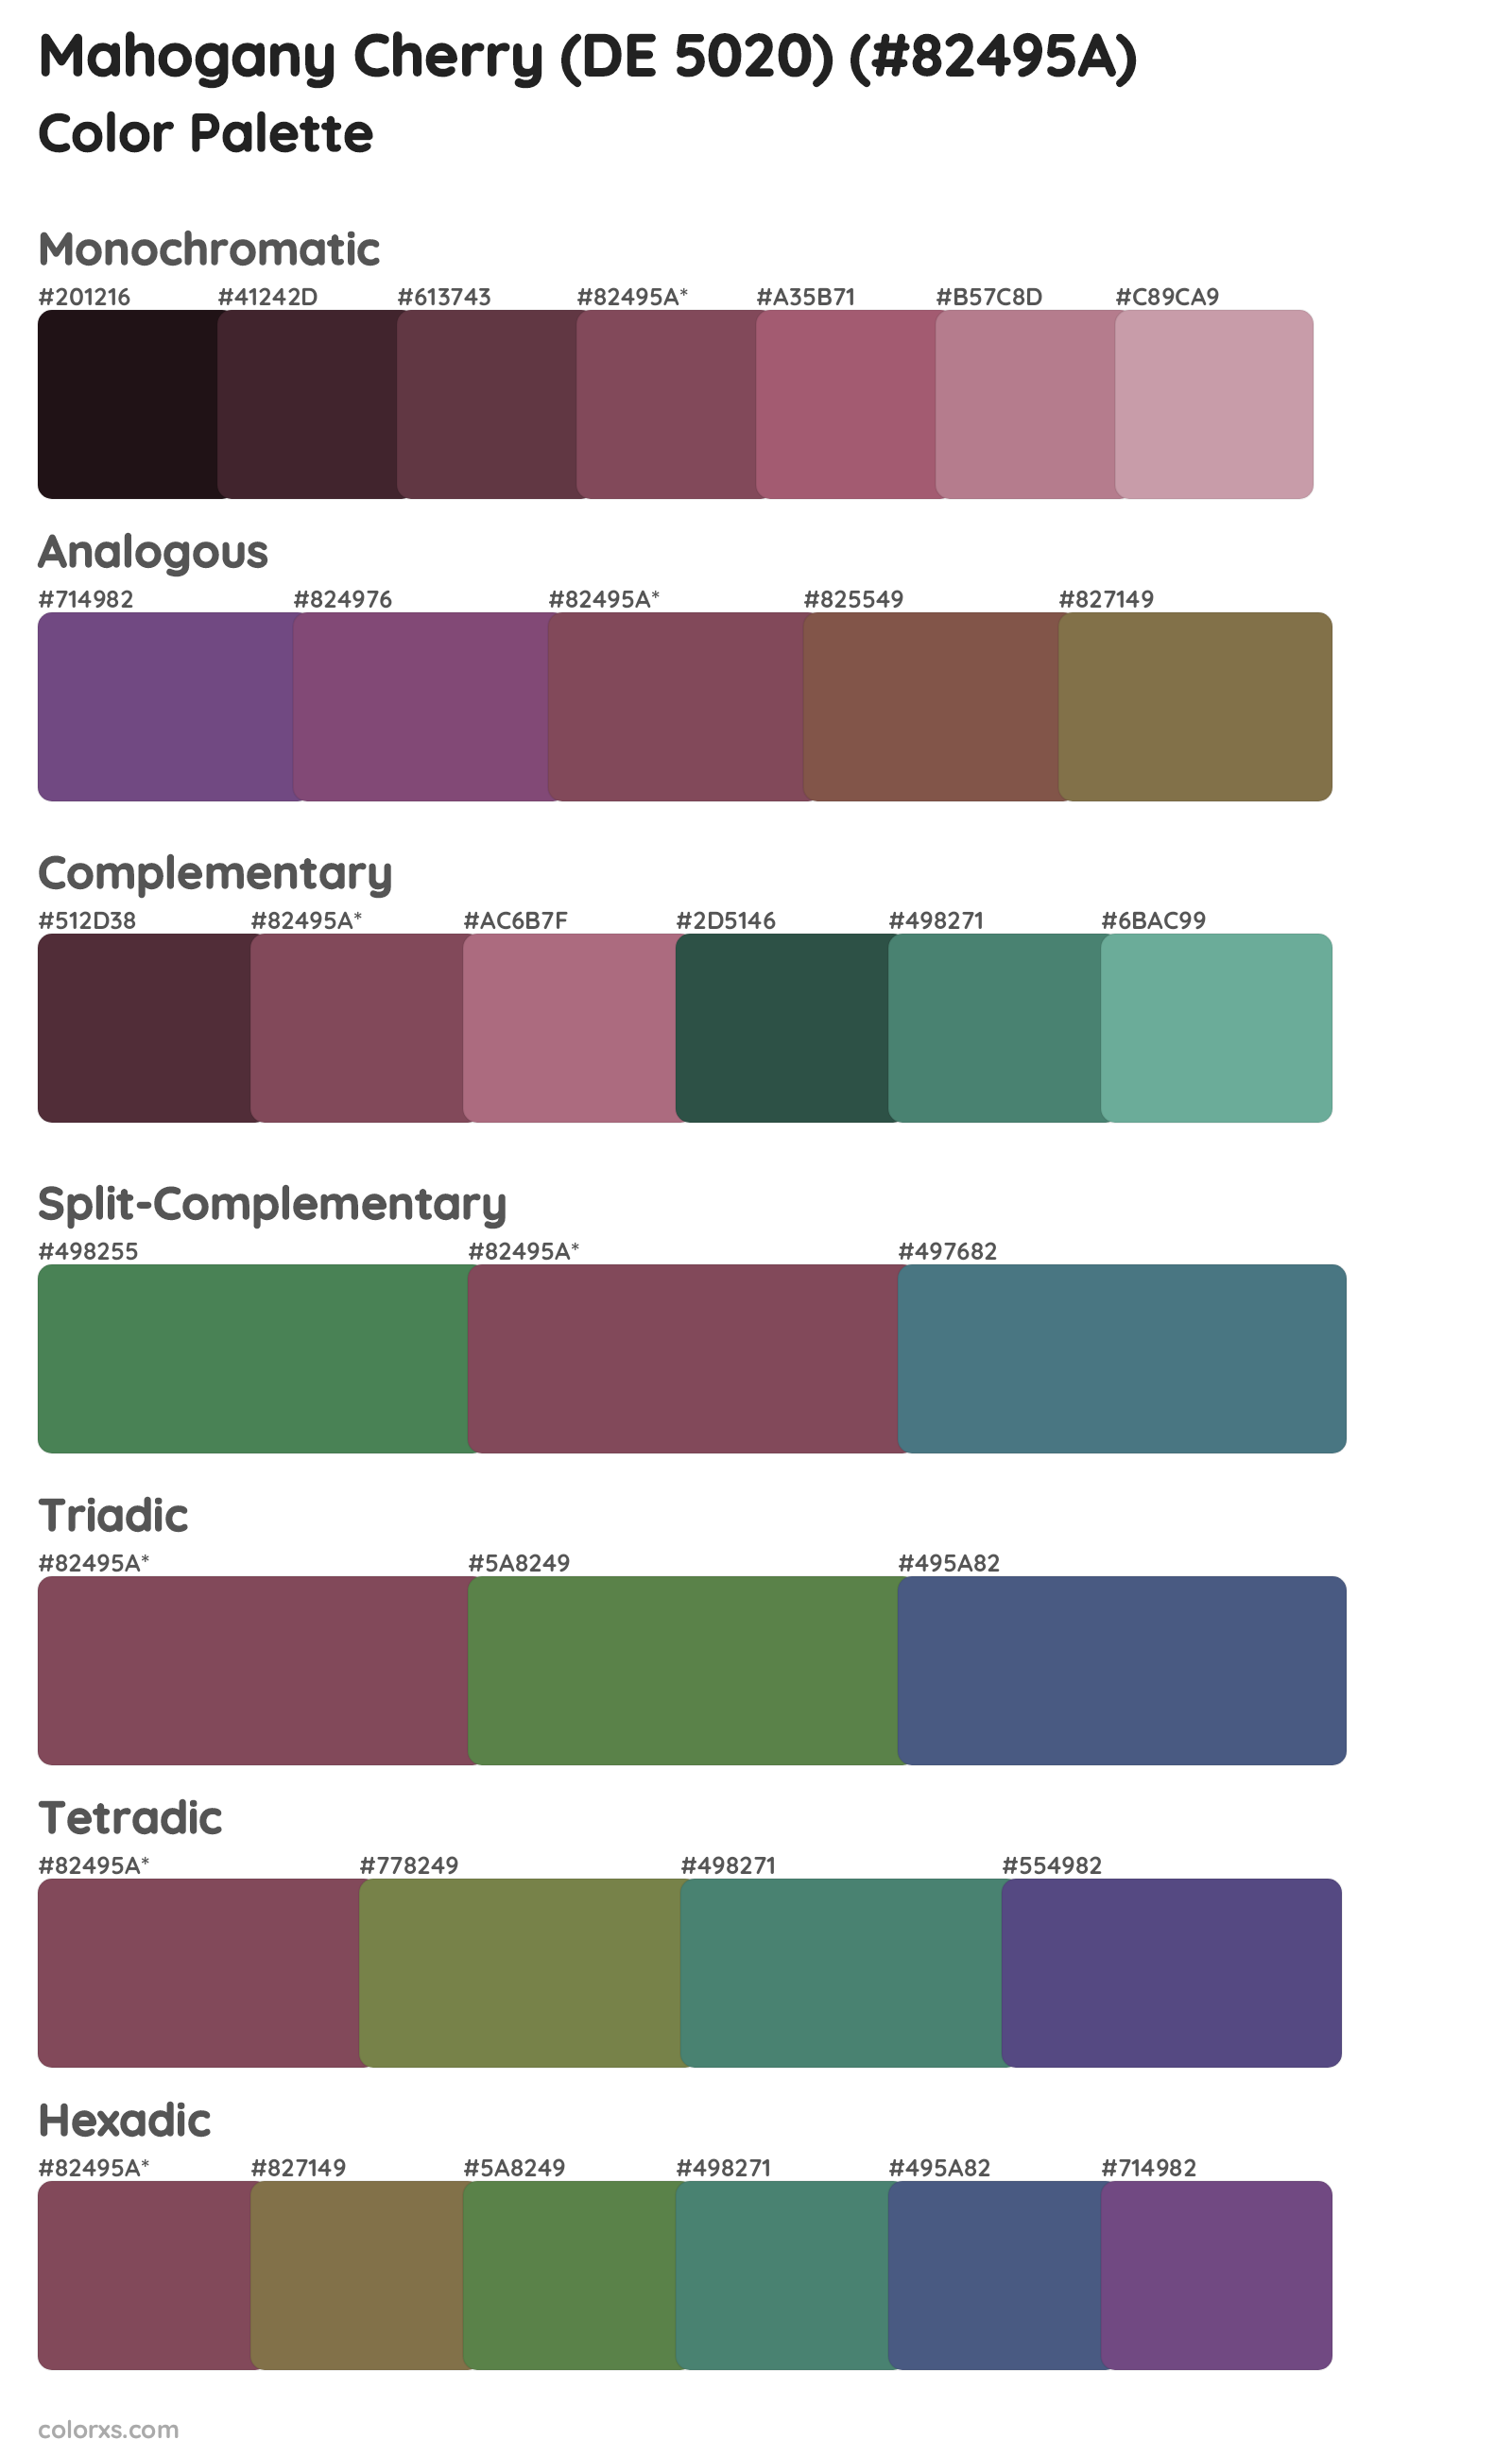 Mahogany Cherry (DE 5020) Color Scheme Palettes